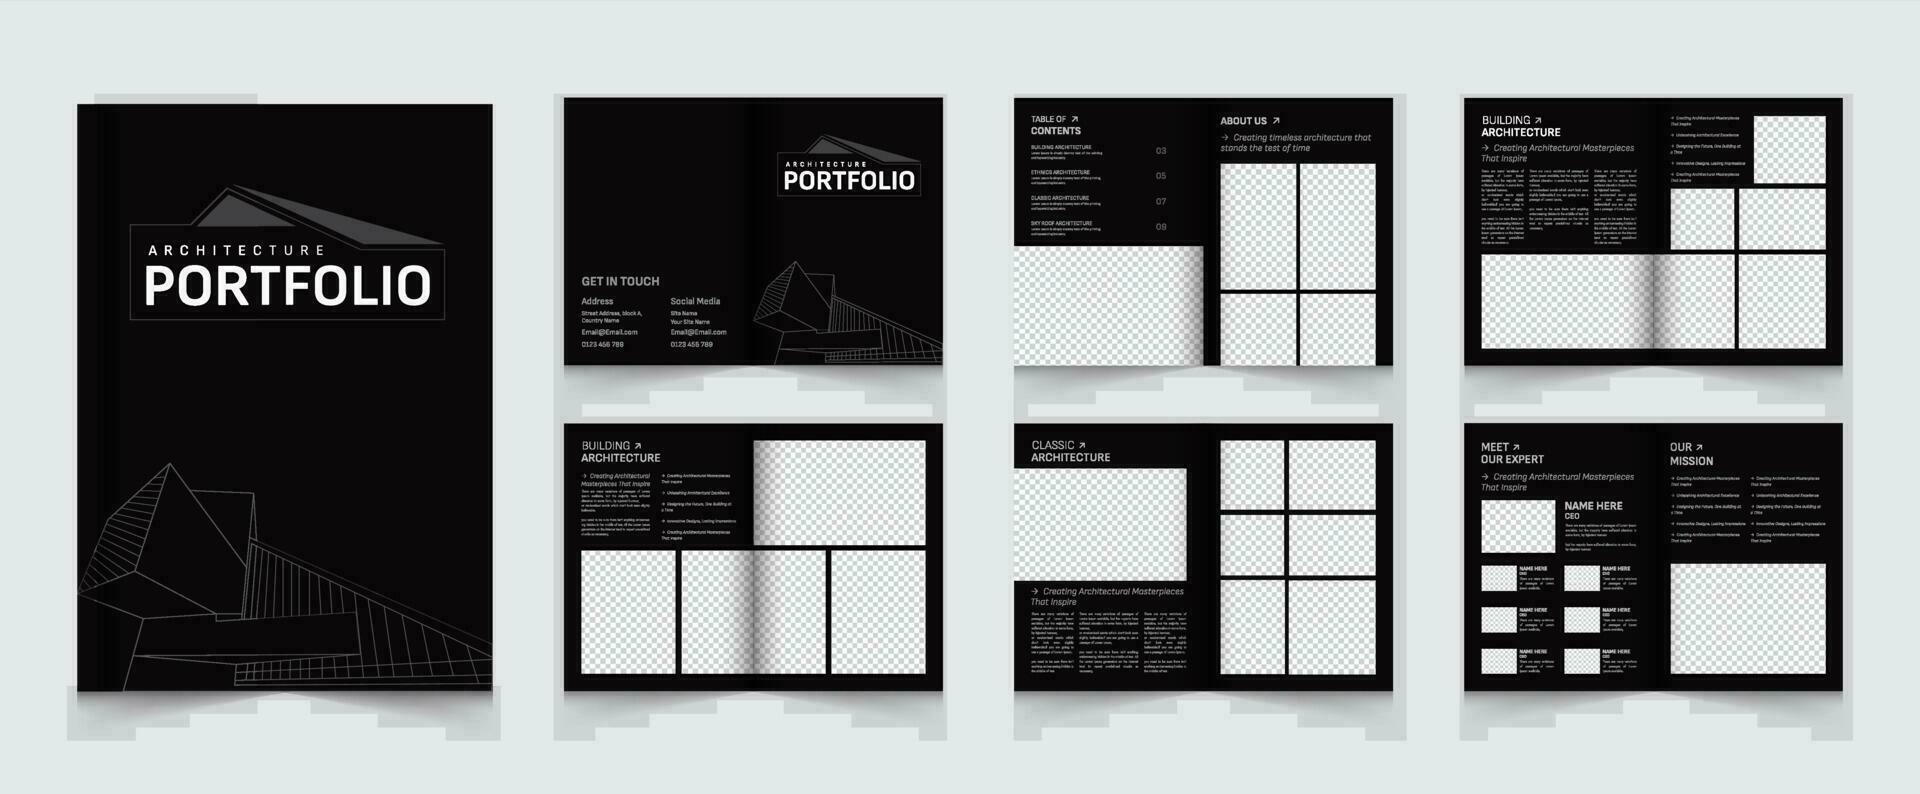 Architecture Portfolio Layout Template or Interior Portfolio Design vector